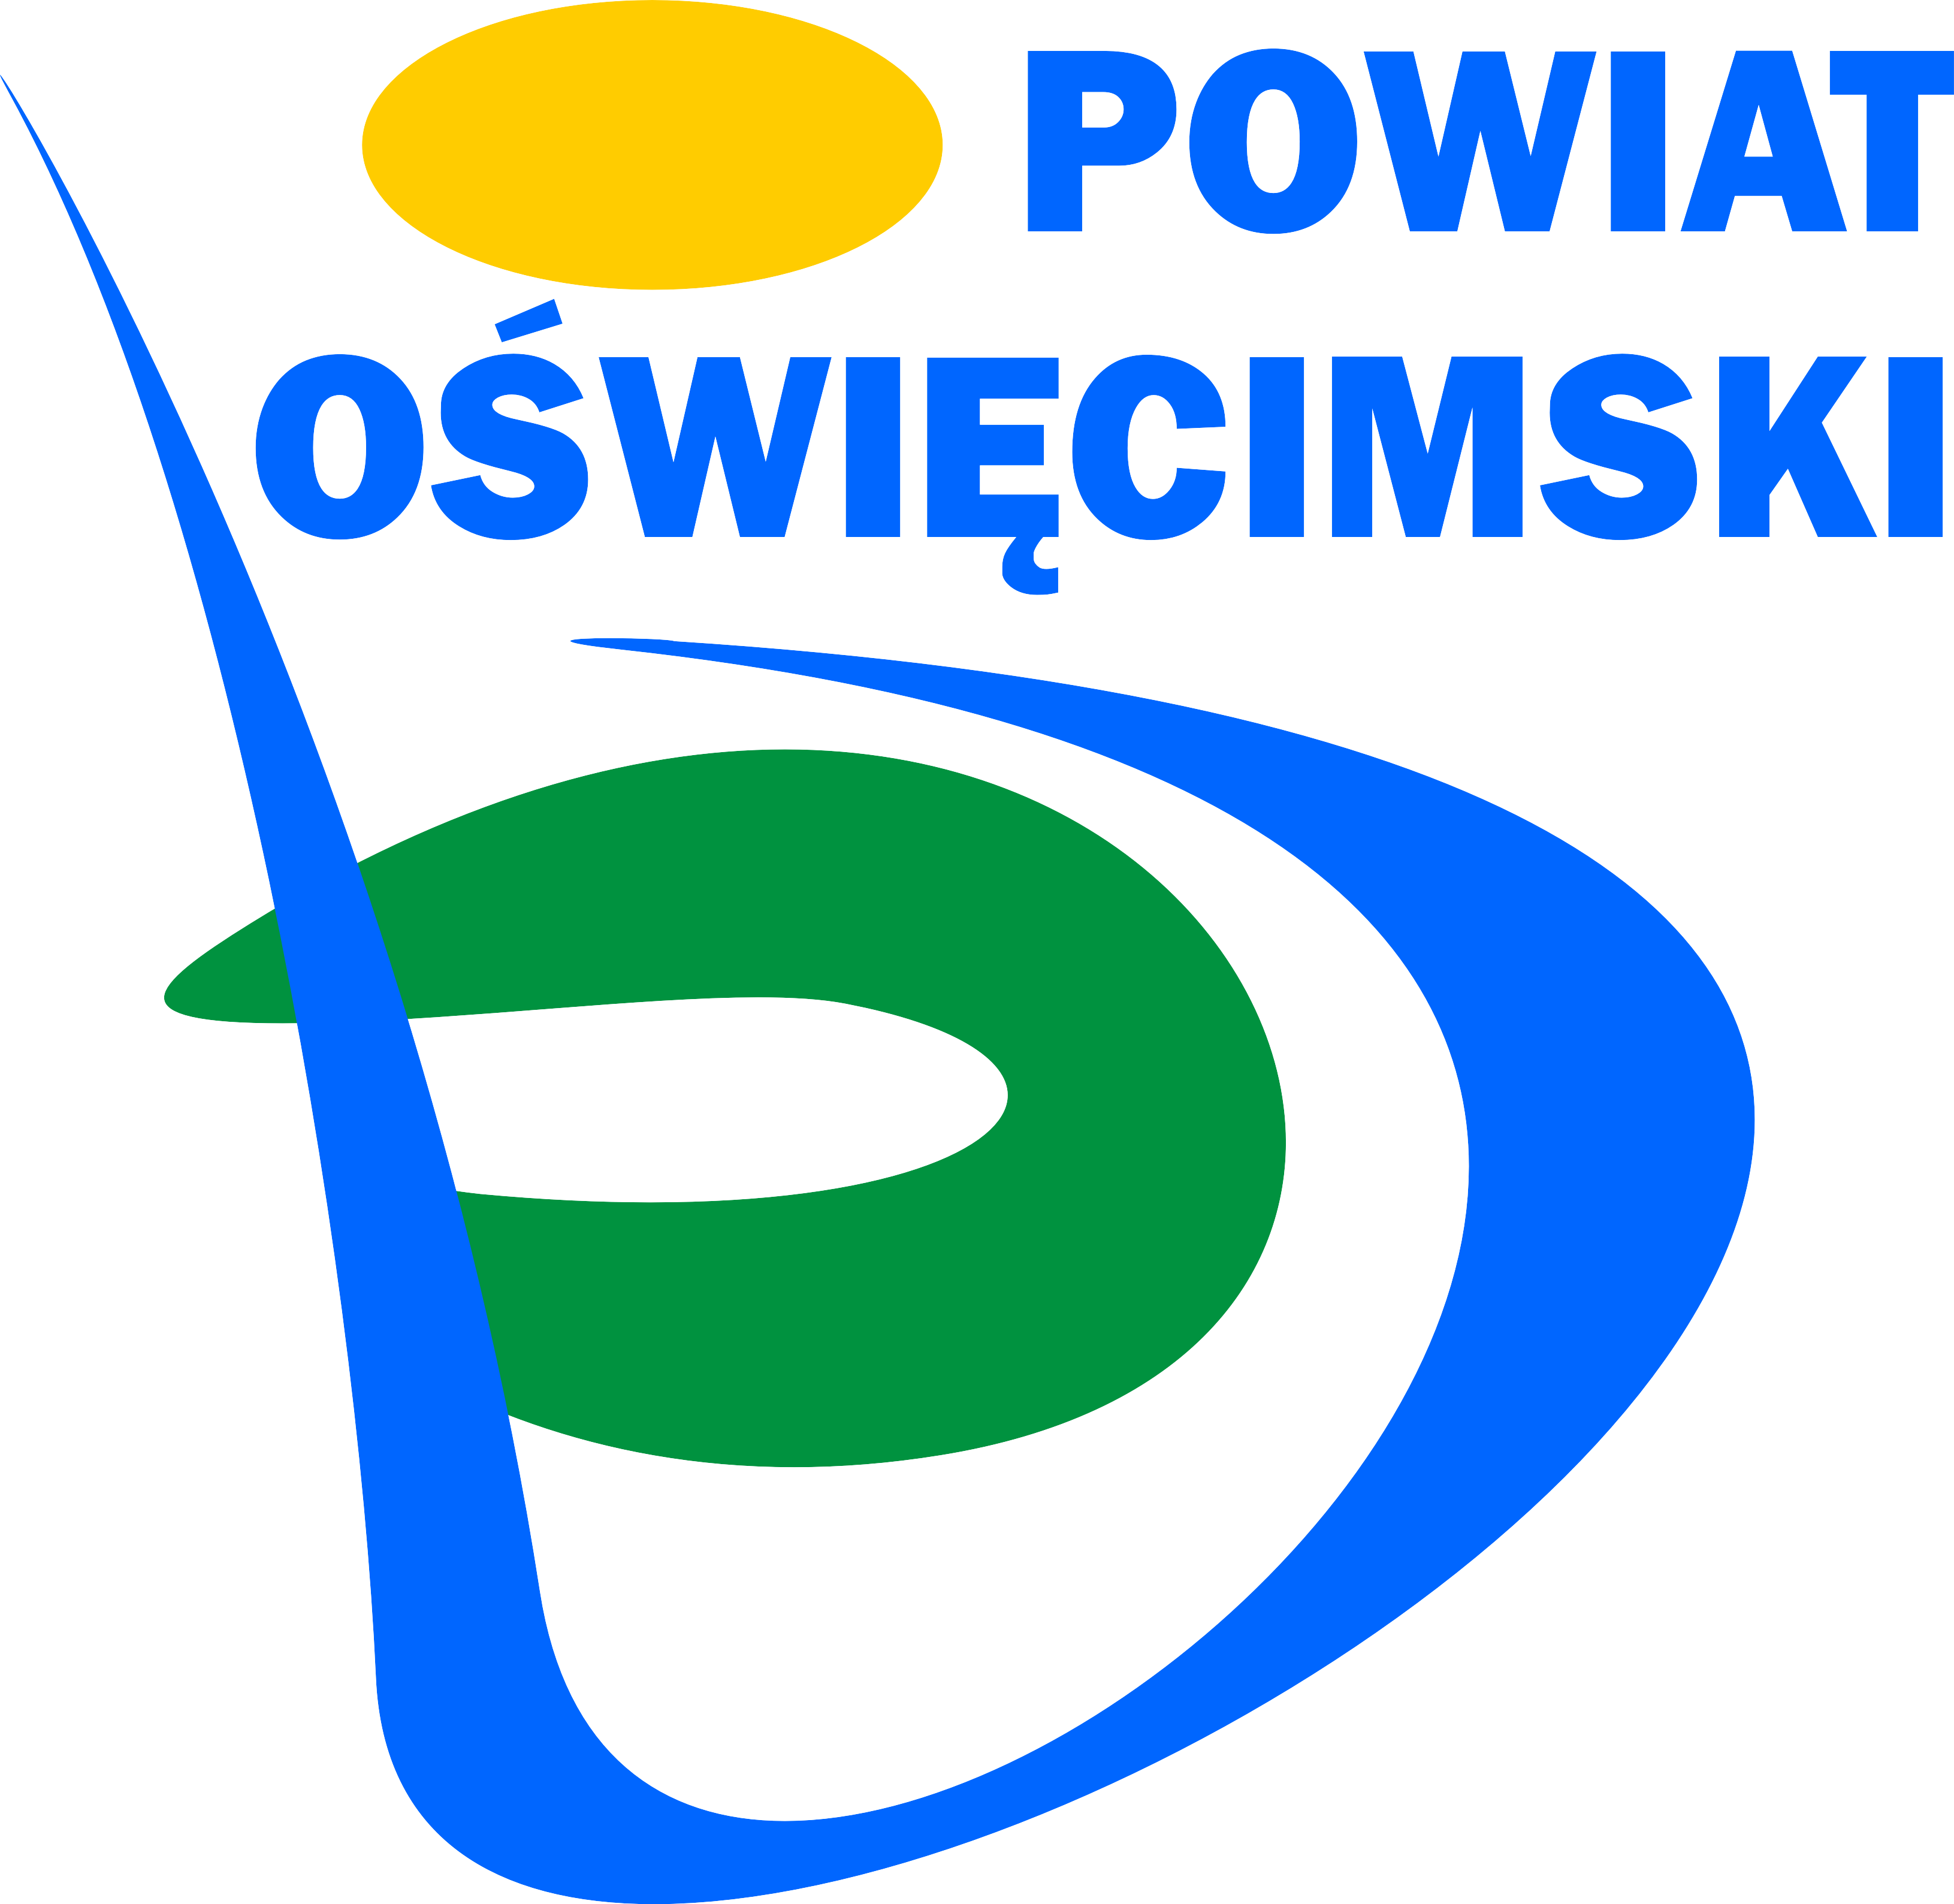 logo powiatu